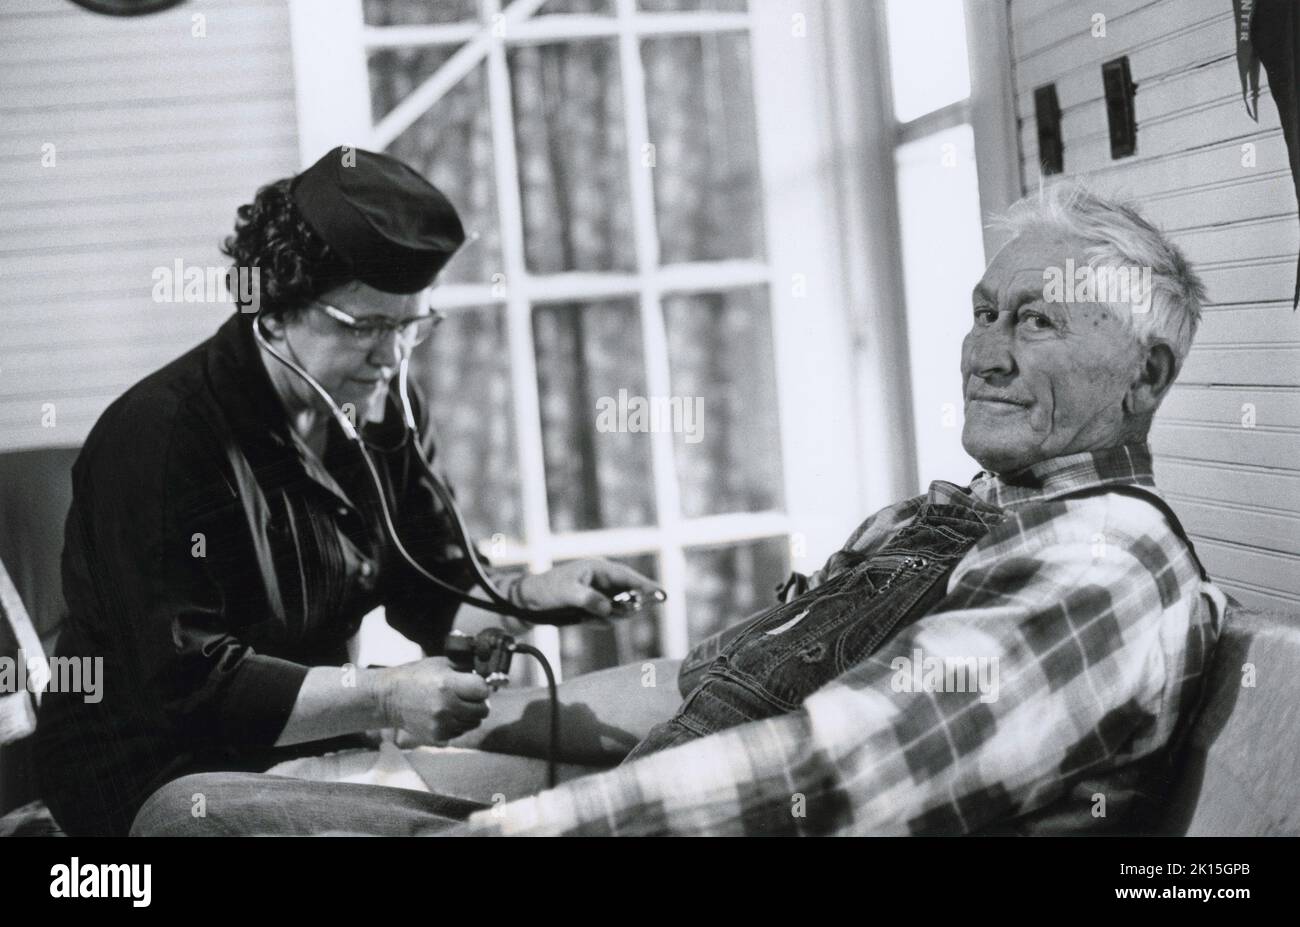 Anna Fox, è stata la prima infermiera della contea nelle montagne del North Carolina occidentale, portando assistenza medica a persone che non avevano mai visto un medico. Qui, controlla la pressione sanguigna di un uomo. Foto Stock